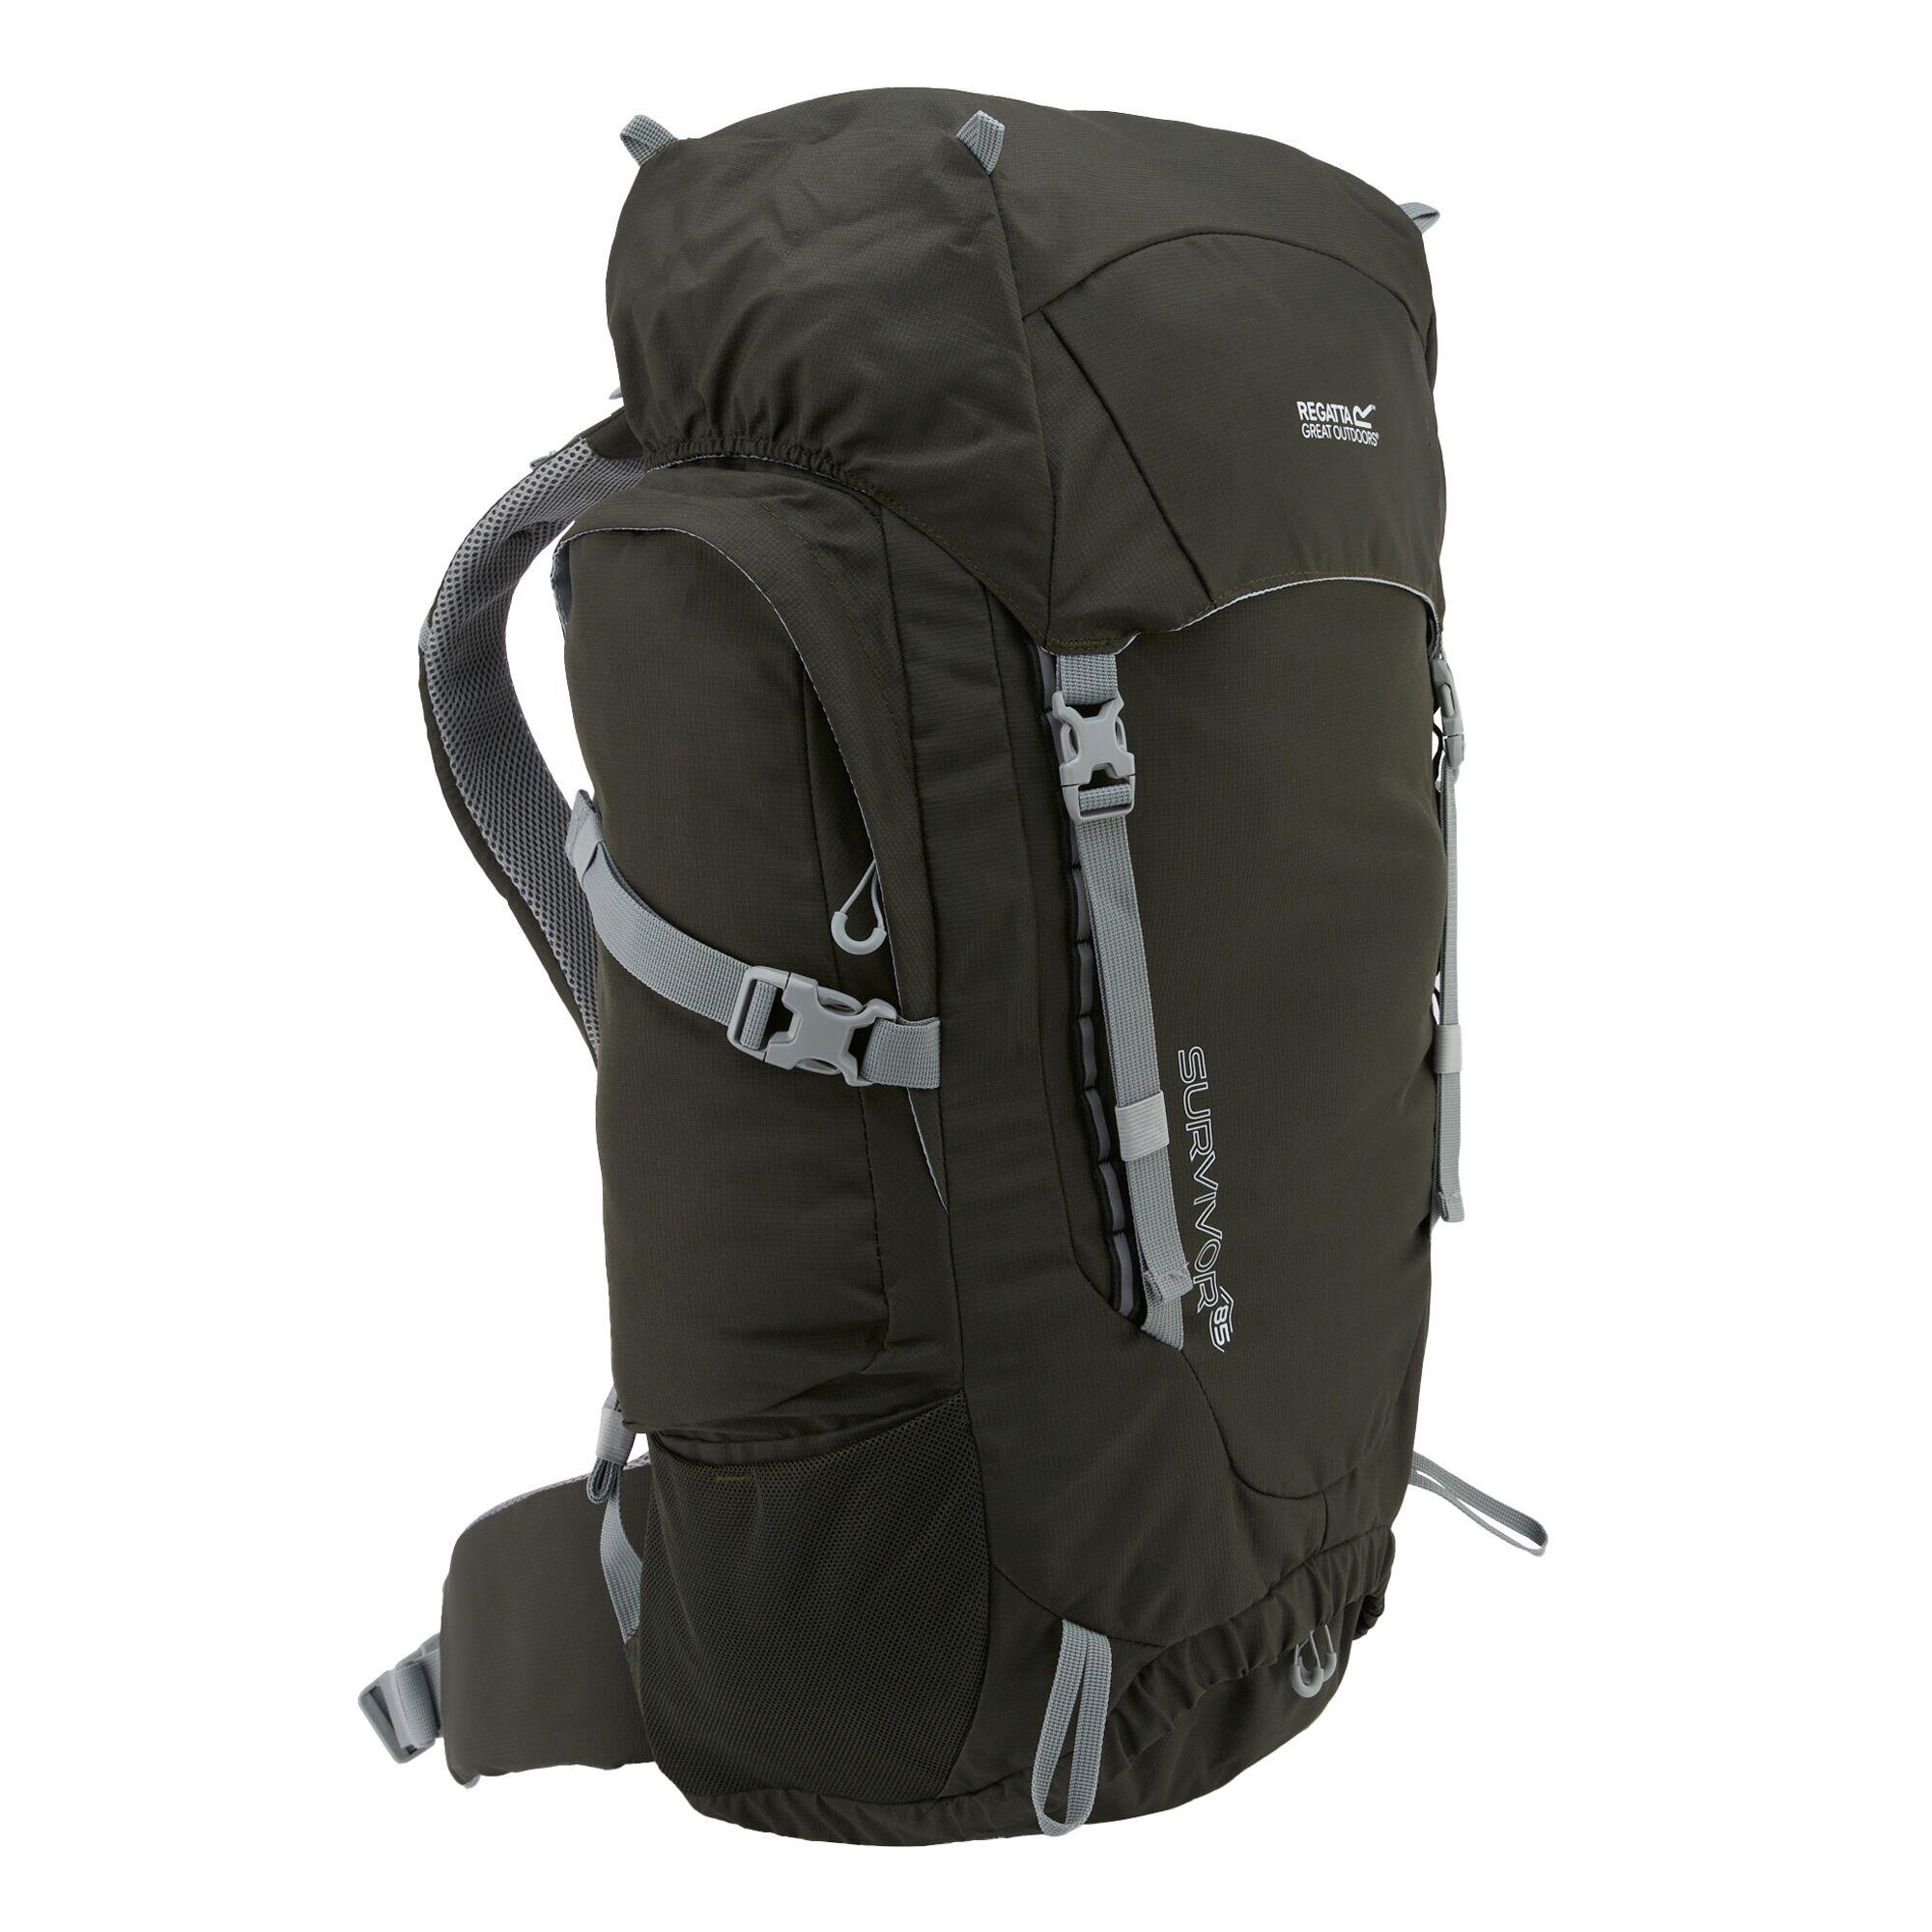 REGATTA Survivor V4 85L Hiking Backpack